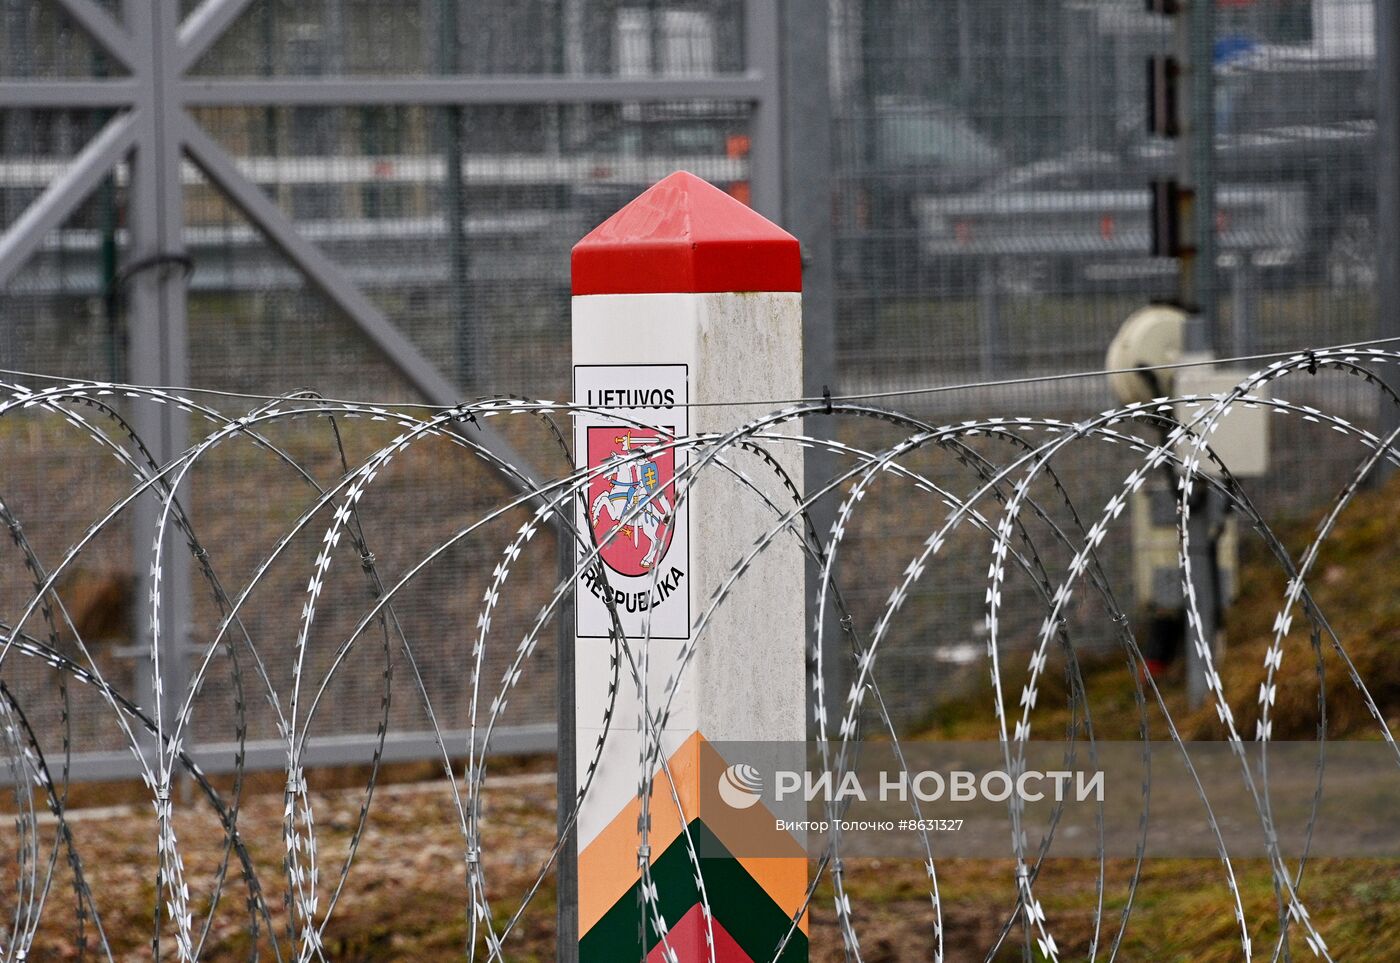 Последний день работы КПП "Котловка" на границе Белоруссии с Литвой